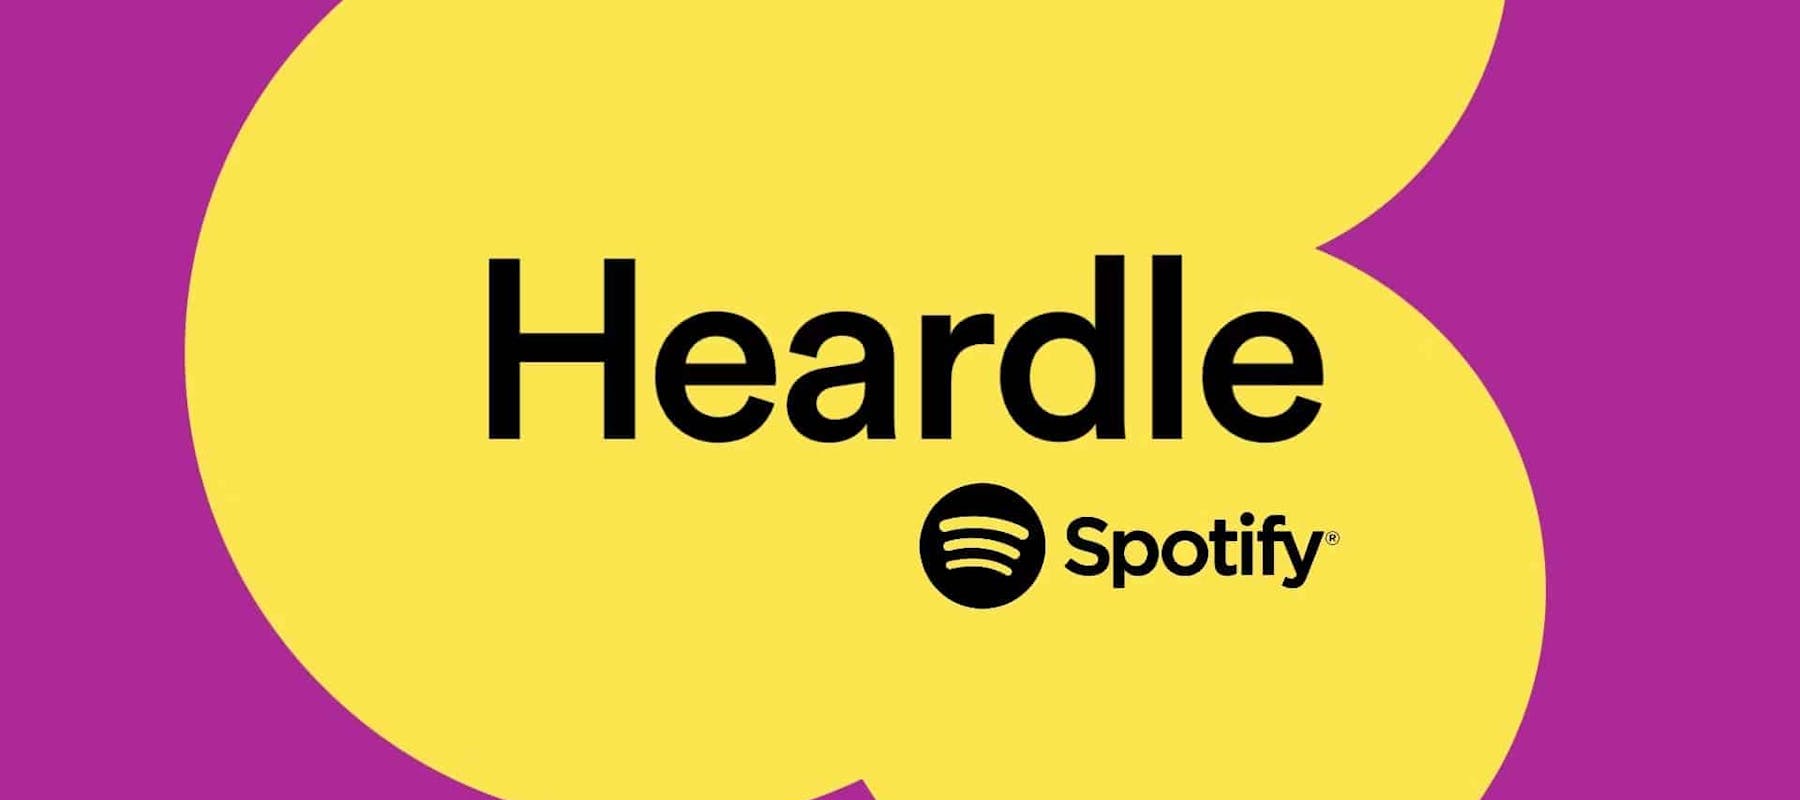 耳障り、Spotifyによる音楽ゲーム。